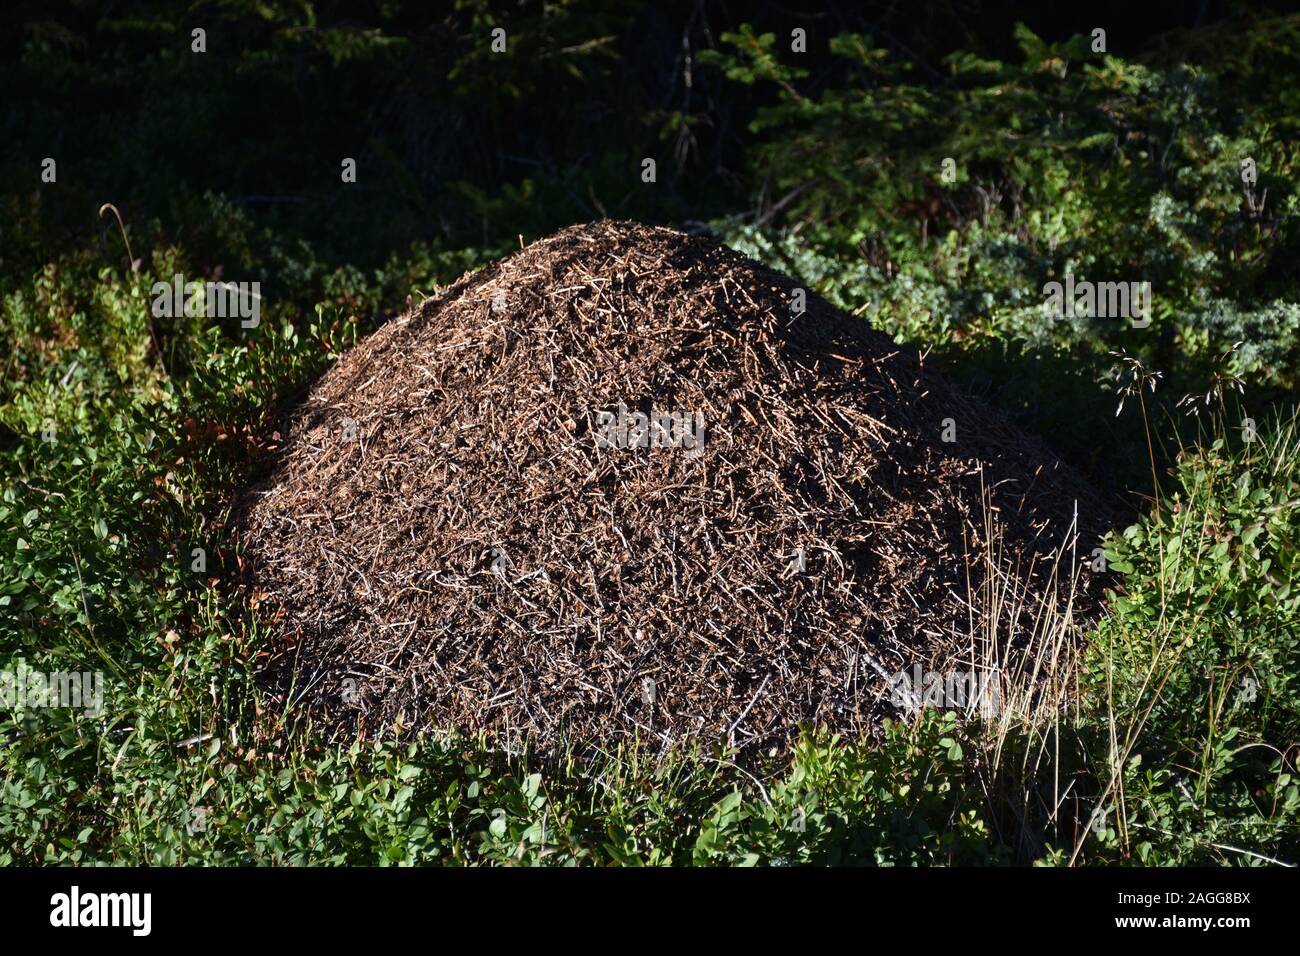 Ameisenhaufen Im Garten : So Werden Sie Ameisen Im Hochbeet Los Mein